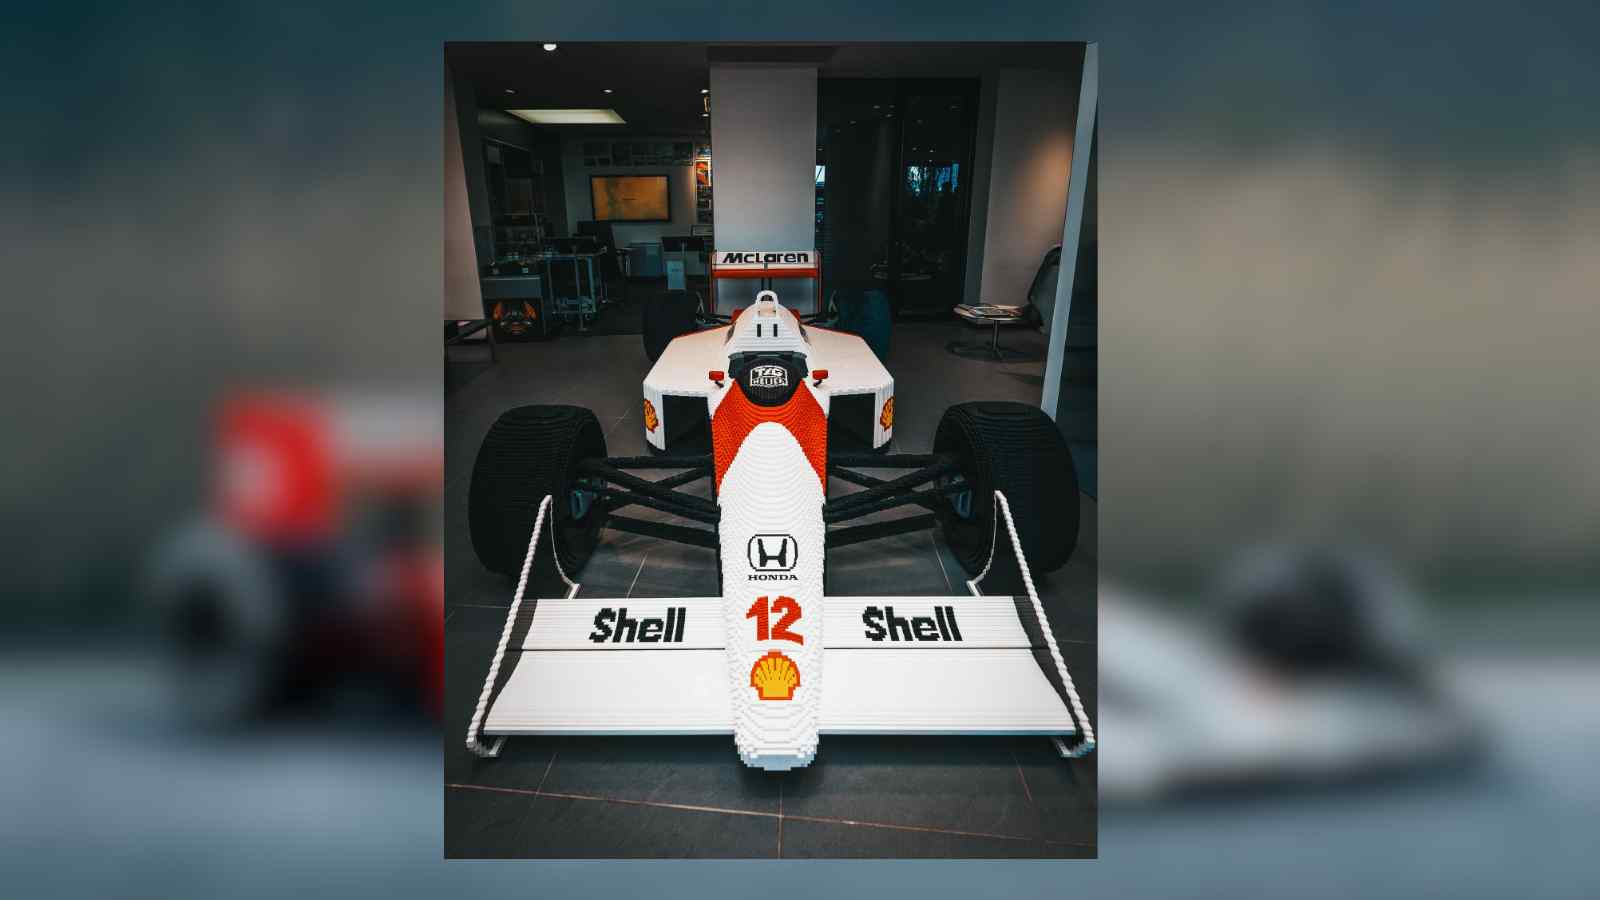 LEGO представляет McLaren MP4/4 в натуральную величину в честь легенды Формулы-1 Айртона Сенны